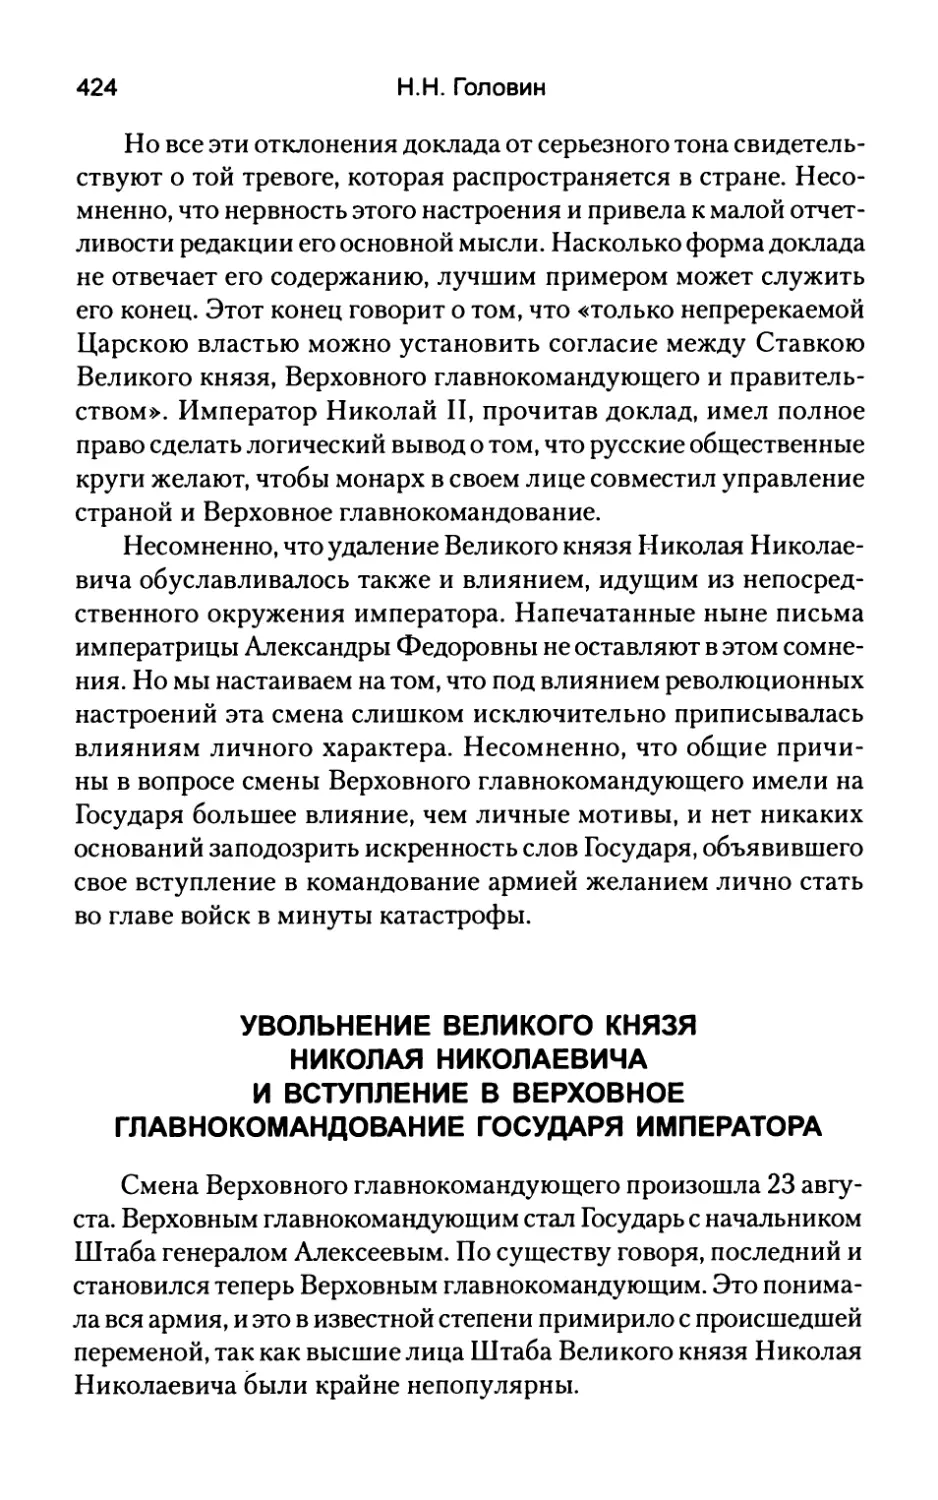 Увольнение  Великого  князя Николая  Николаевича  и  вступление в  Верховное  Главнокомандование Государя  императора